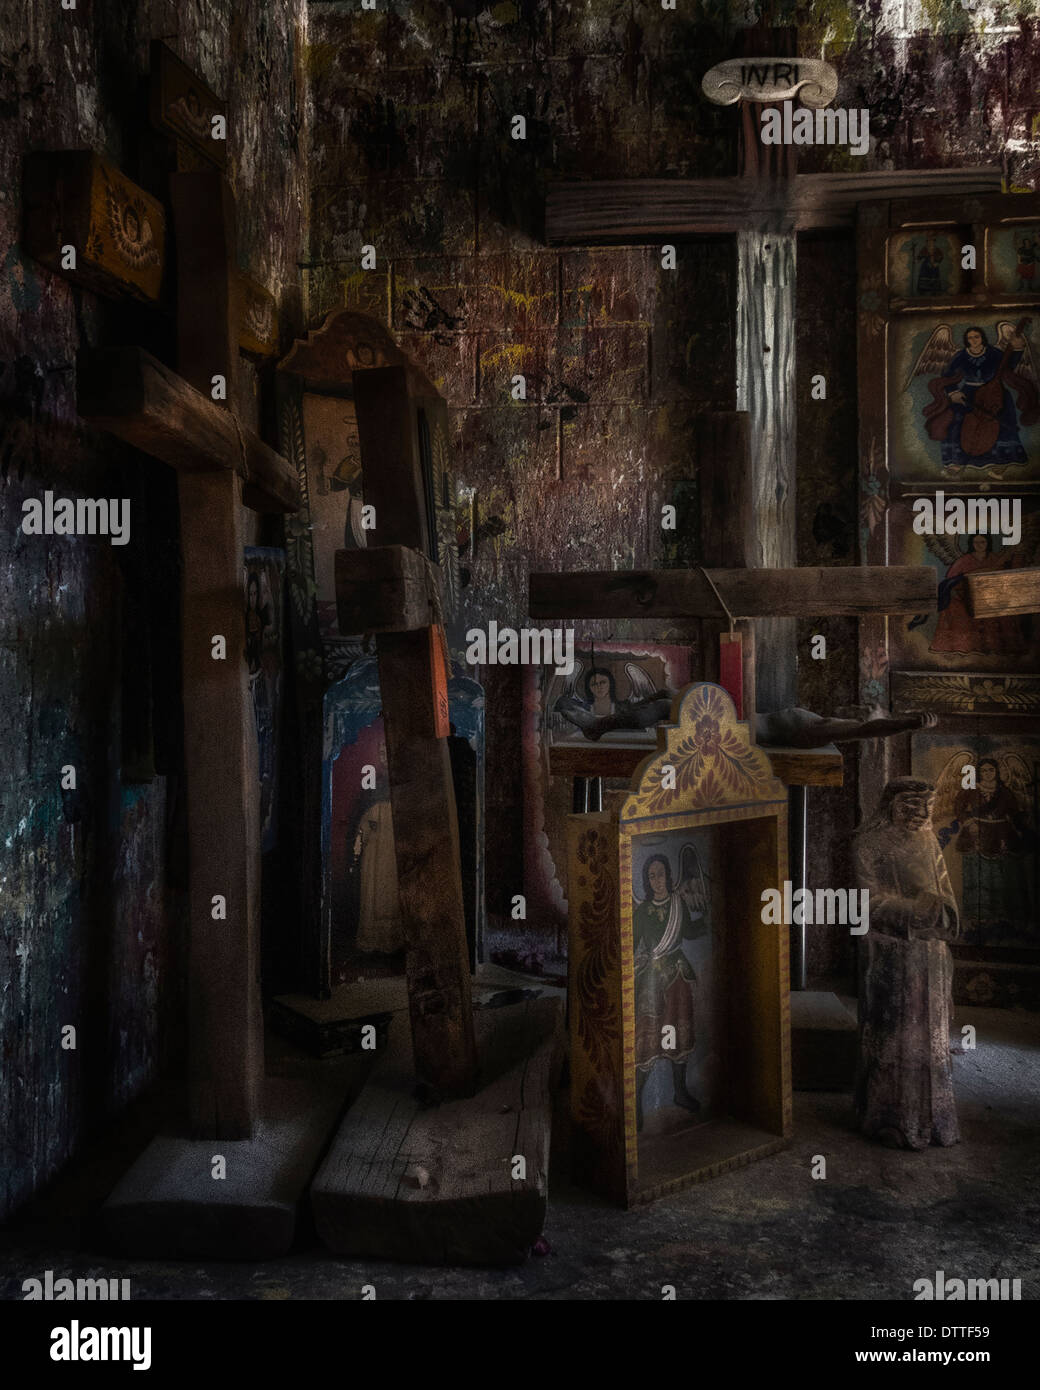 Una stanza piena di croci ad una rivendita e negozio giardino in grotta Creek Arizona. Un creepy,scuro, religiosi immagine editoriale. Foto Stock